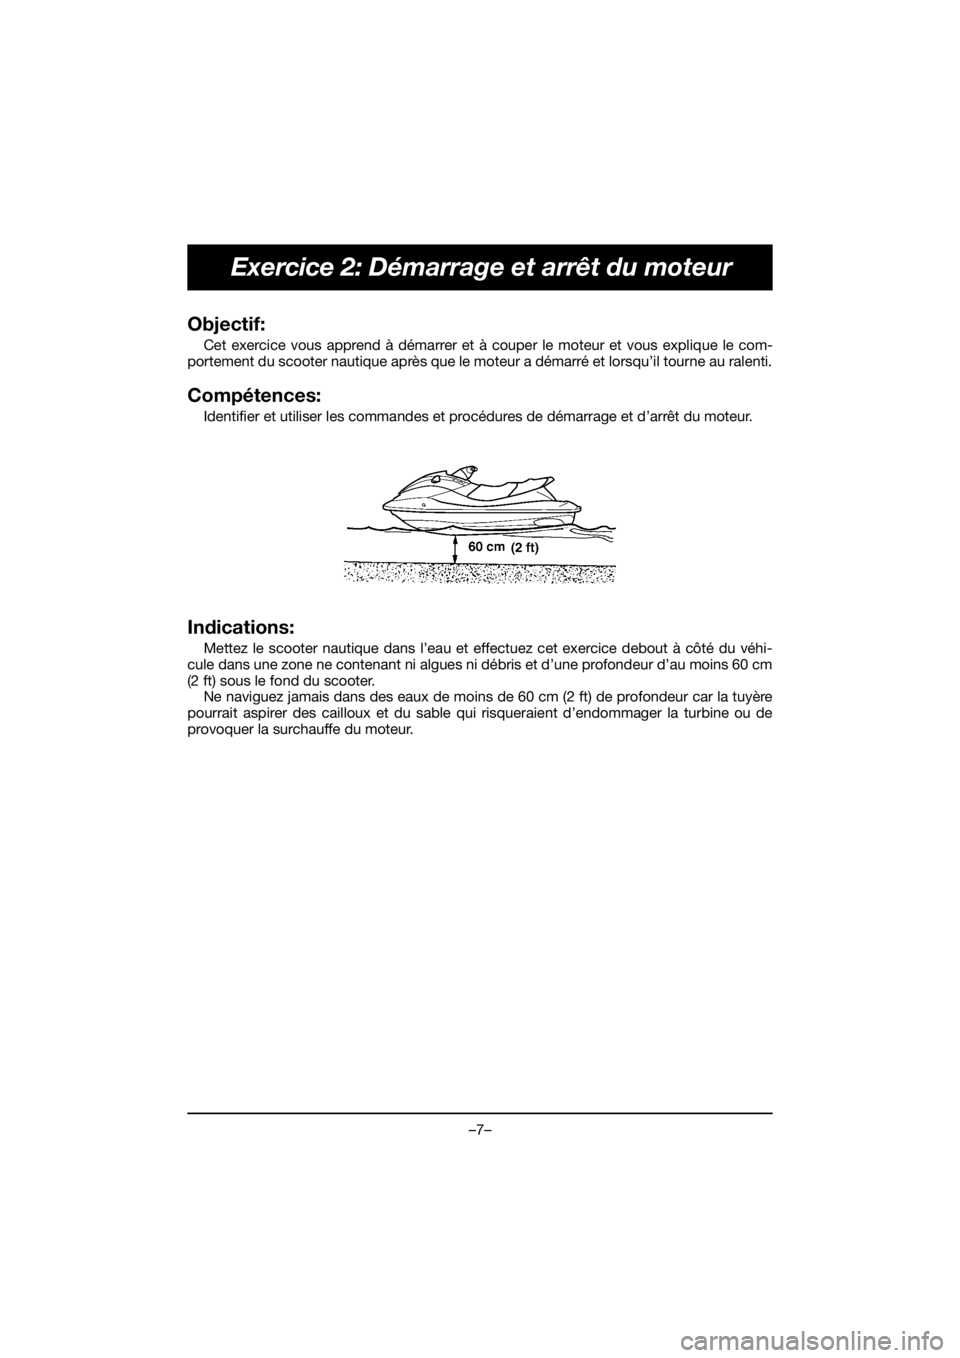 YAMAHA EX 2021  Manuale duso (in Italian) –7–
Exercice 2: Démarrage et arrêt du moteur
Objectif: 
Cet exercice vous apprend à démarrer et à couper le moteur et vous explique le com-
portement du scooter nautique après que le moteur 